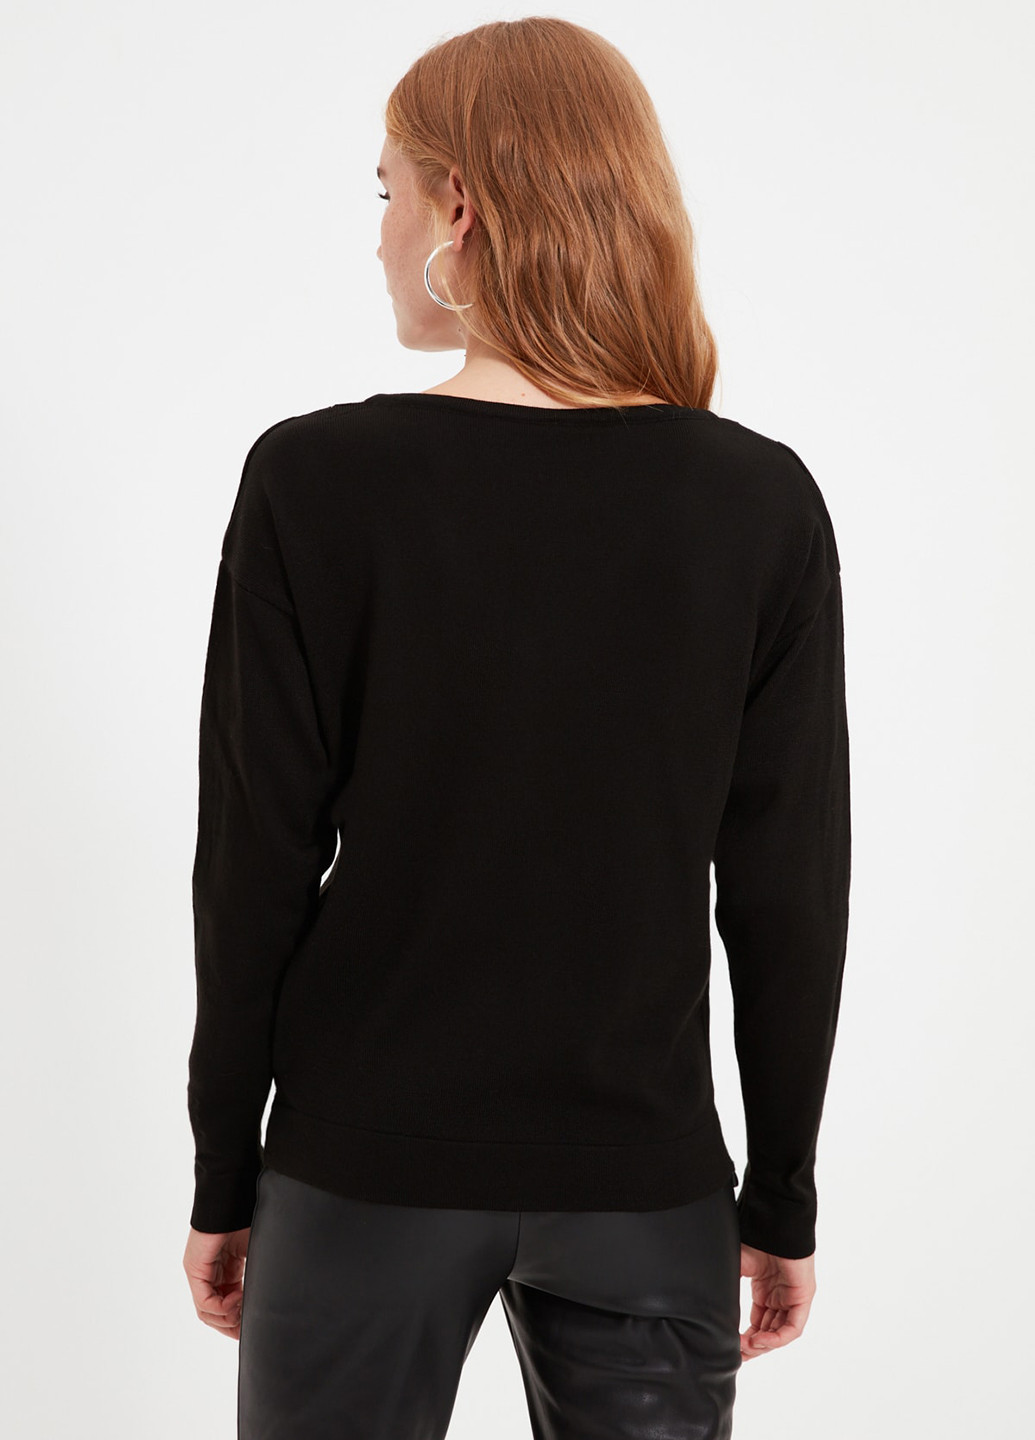 Черный демисезонный пуловер пуловер Trendyol